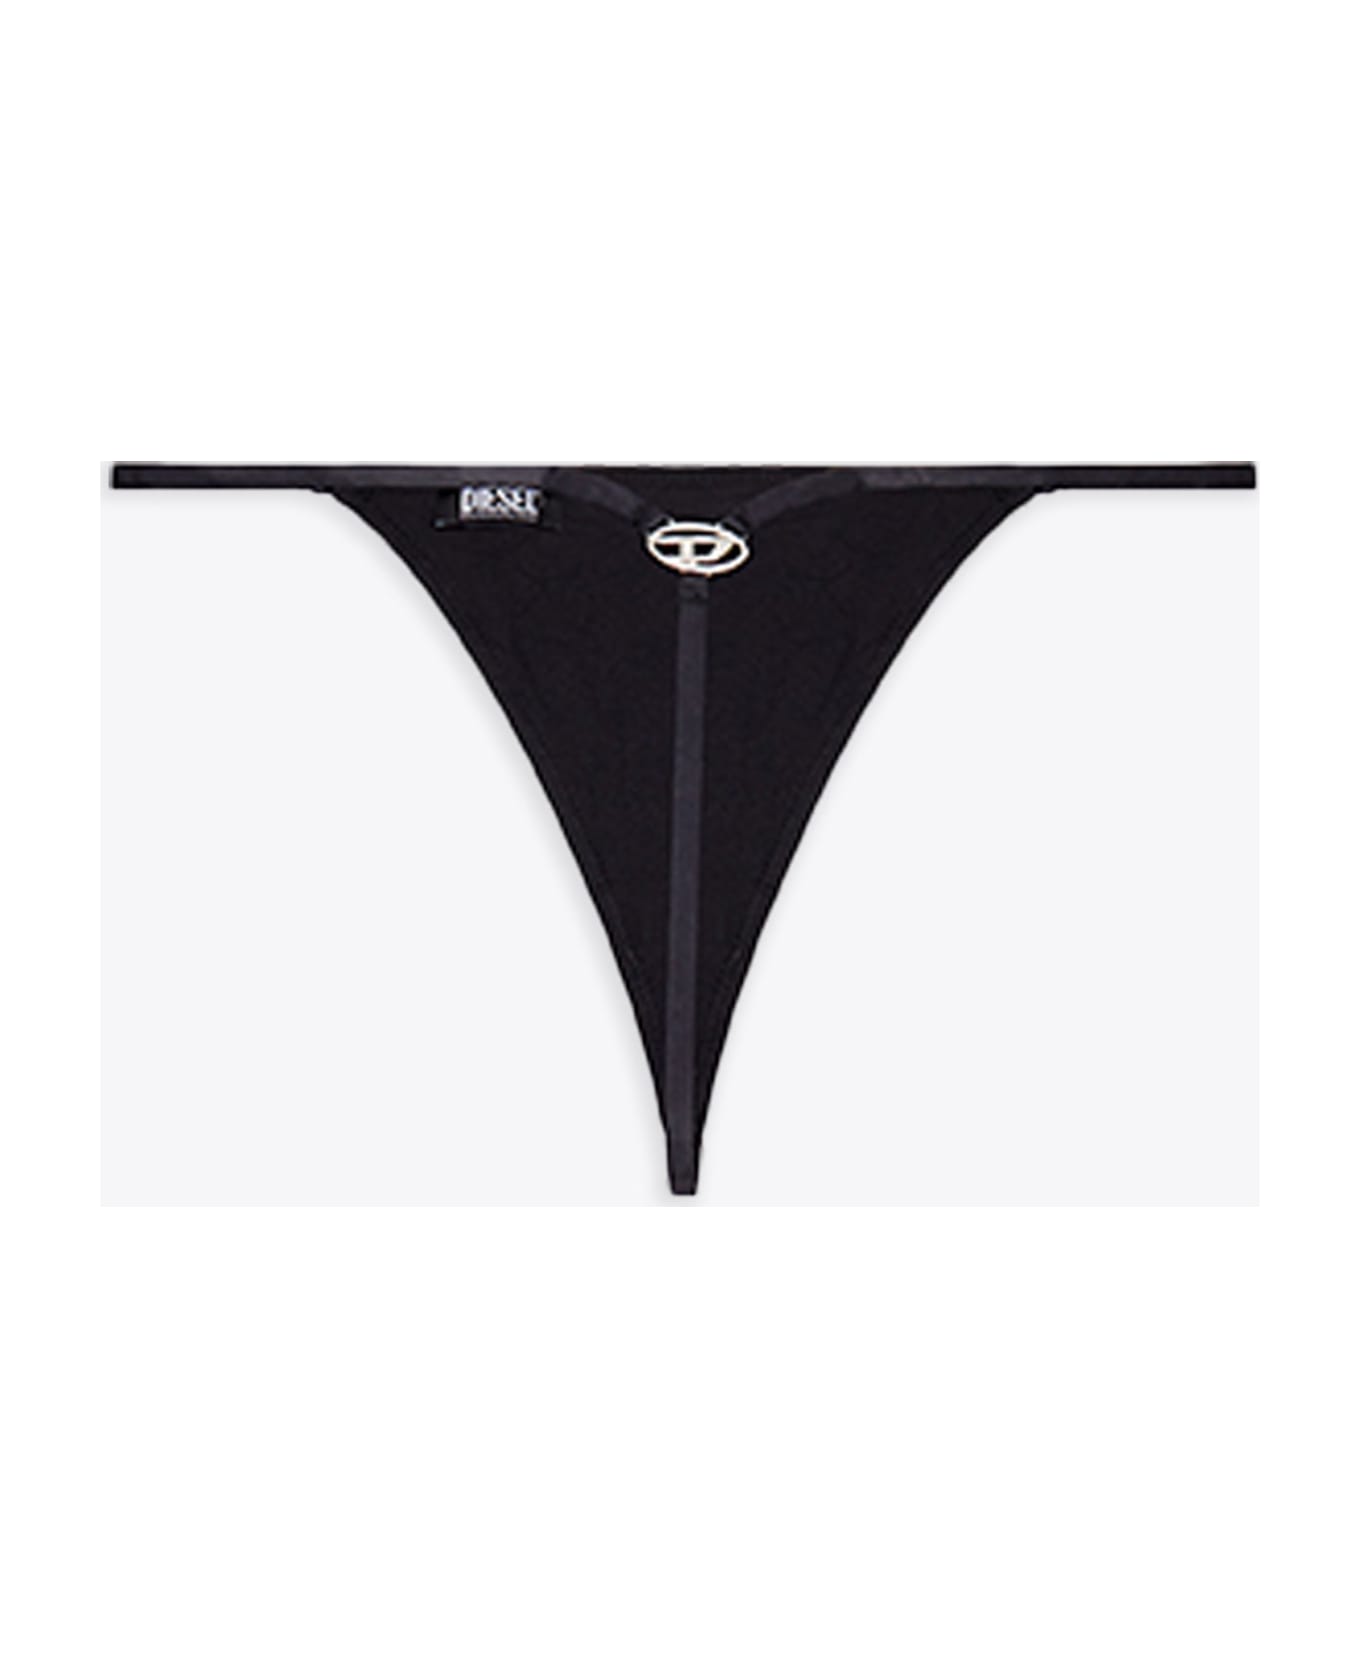 Diesel Ufst-d-string Black thong with metal Oval D logo - Ufst D-String - Nero